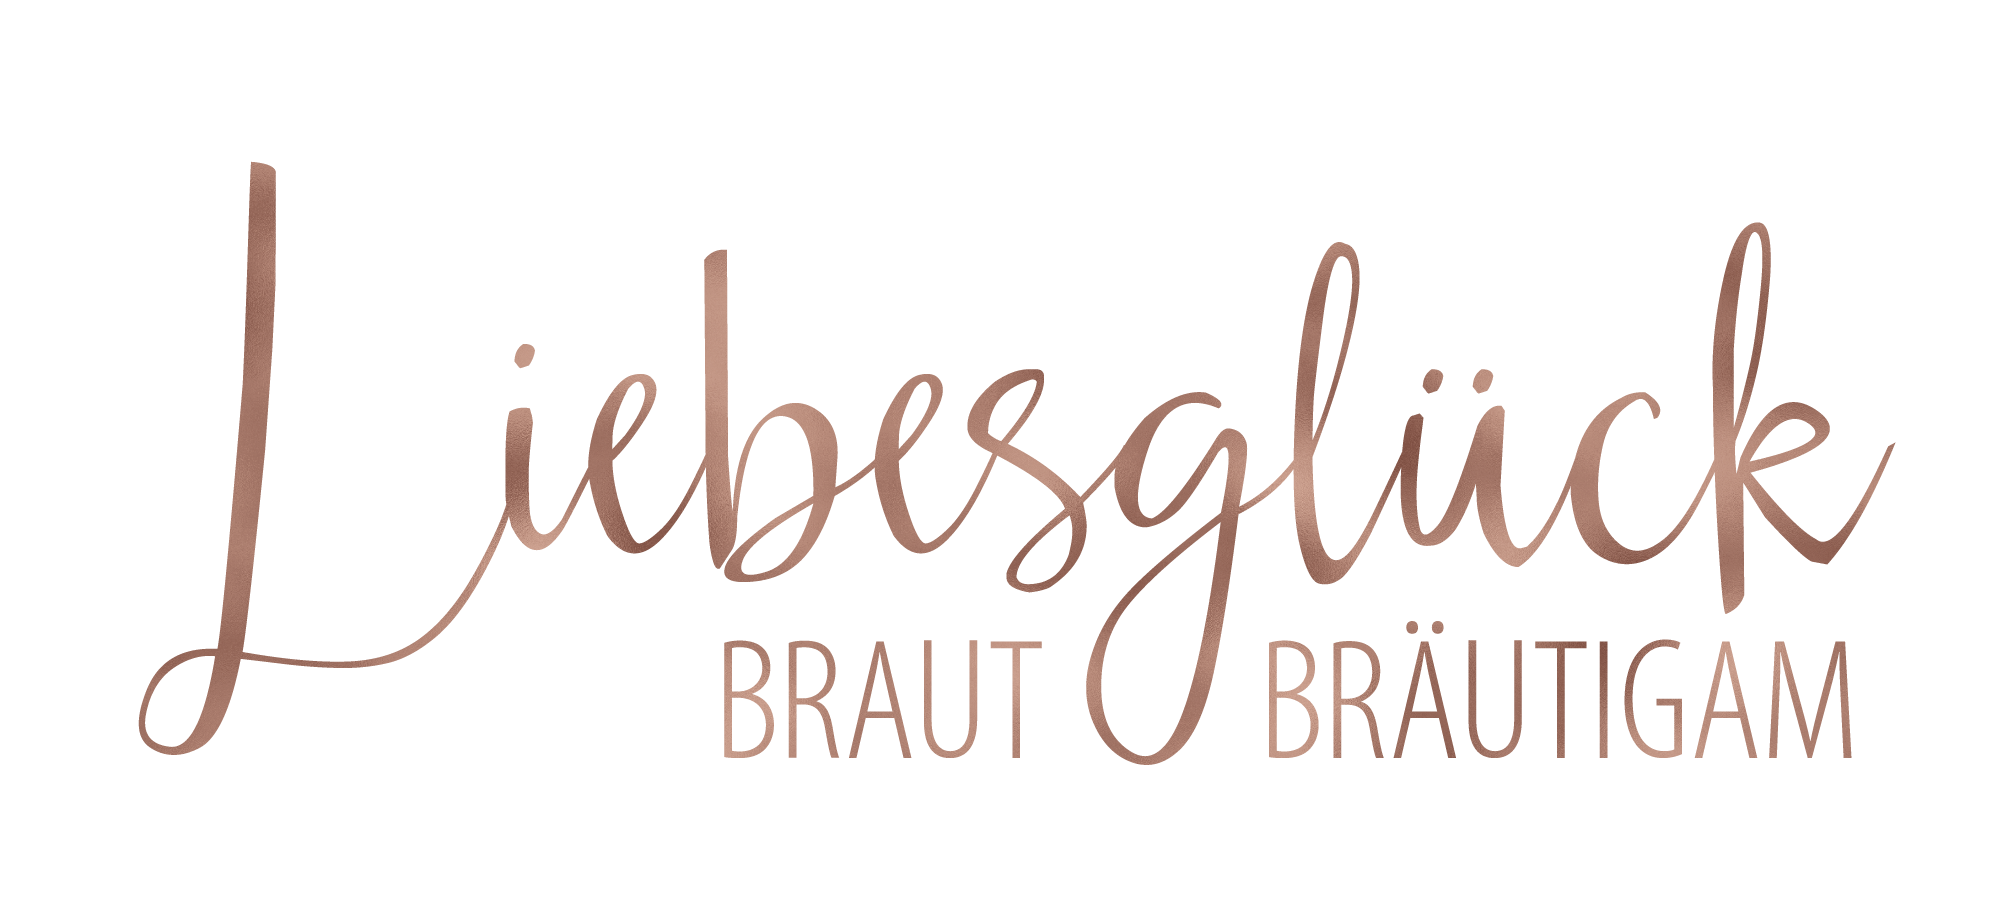 Liebesglück – Braut & Bräutigam | Höchberg bei Würzburg